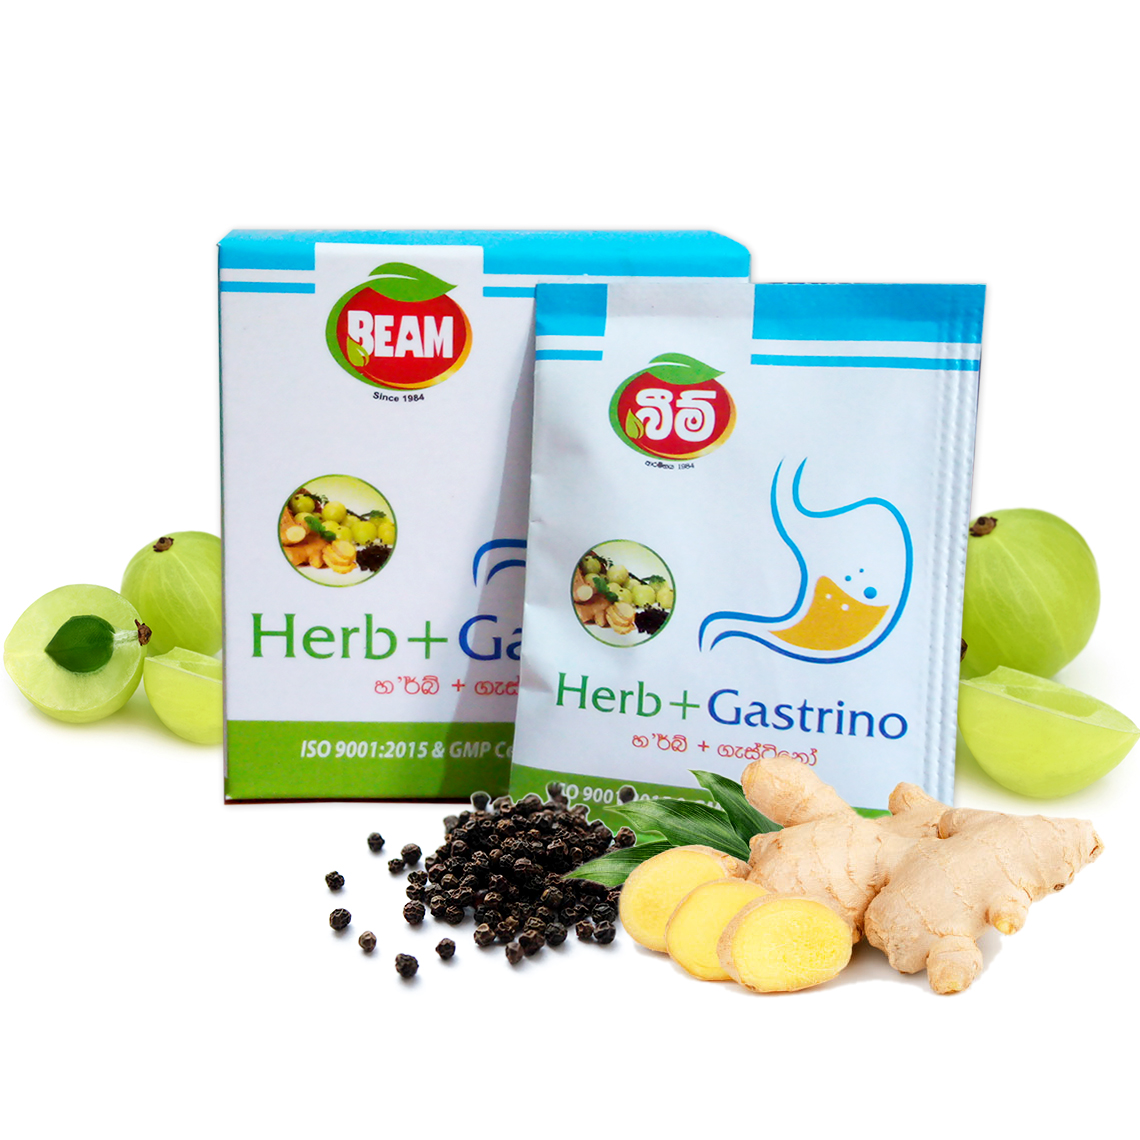 Herb + Gastrino